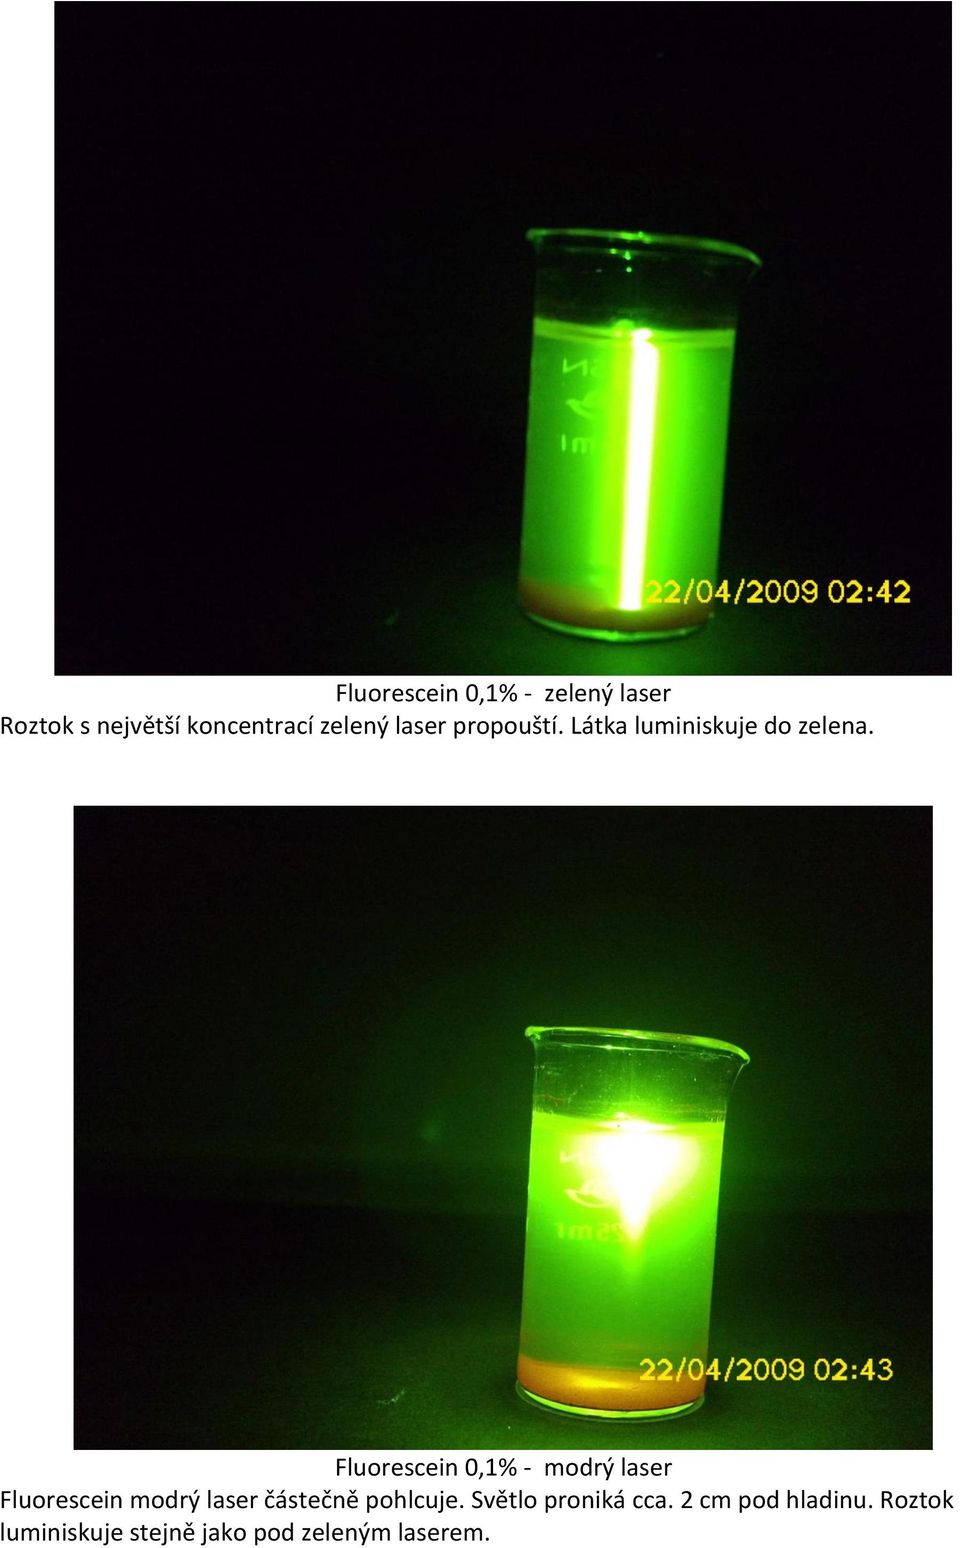 Fluorescein 0,1% - modrý laser Fluorescein modrý laser částečně